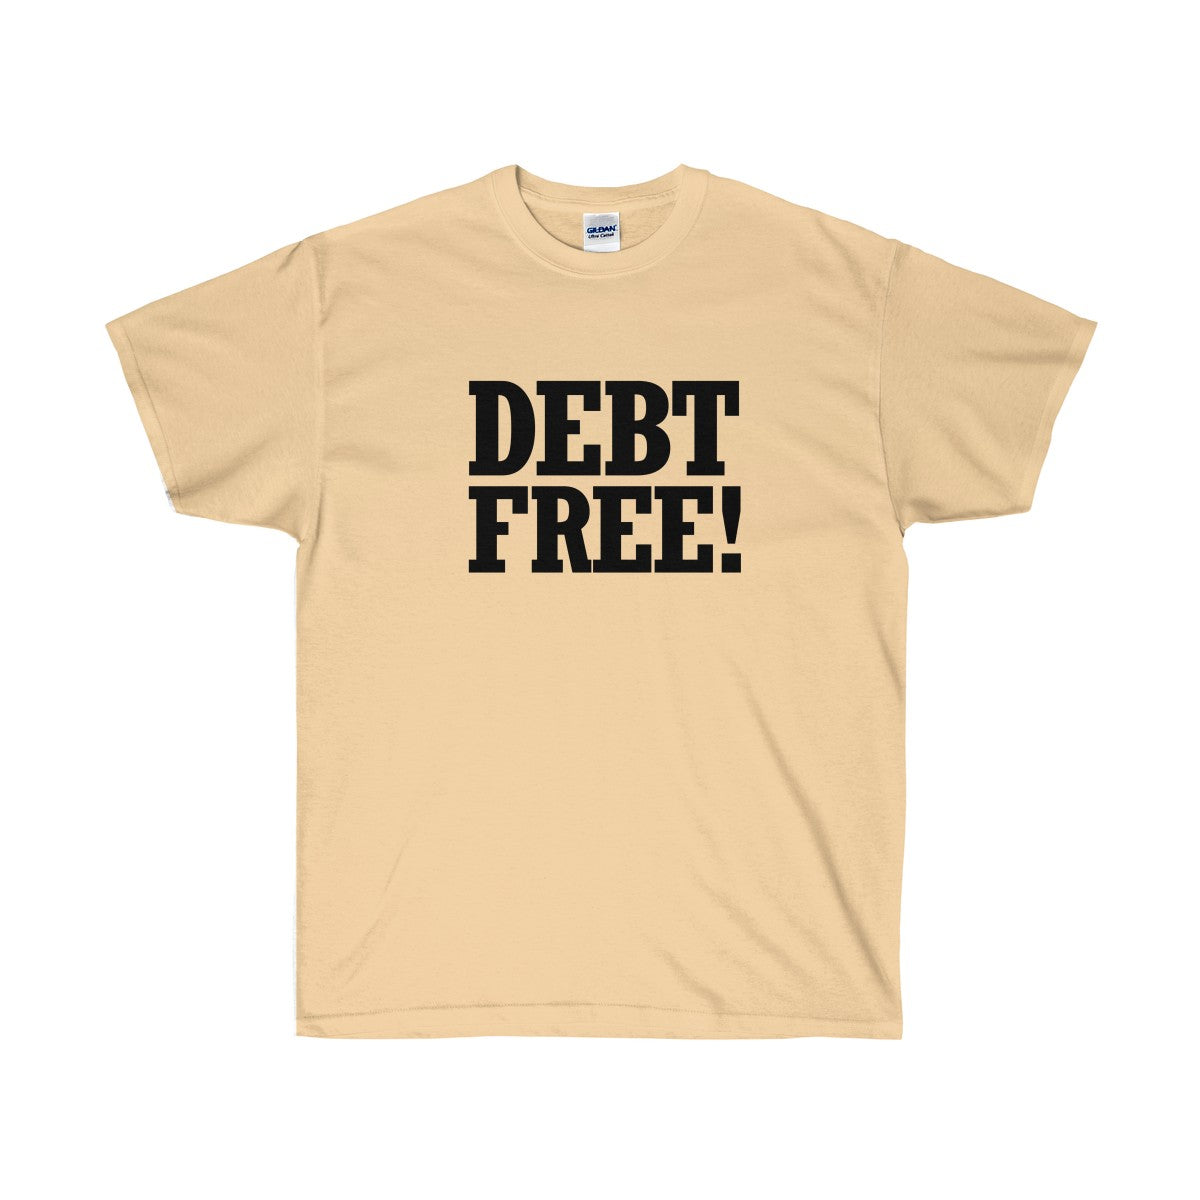 Debt Free! Ultra Cotton T-Shirt-T-Shirt-PureDesignTees